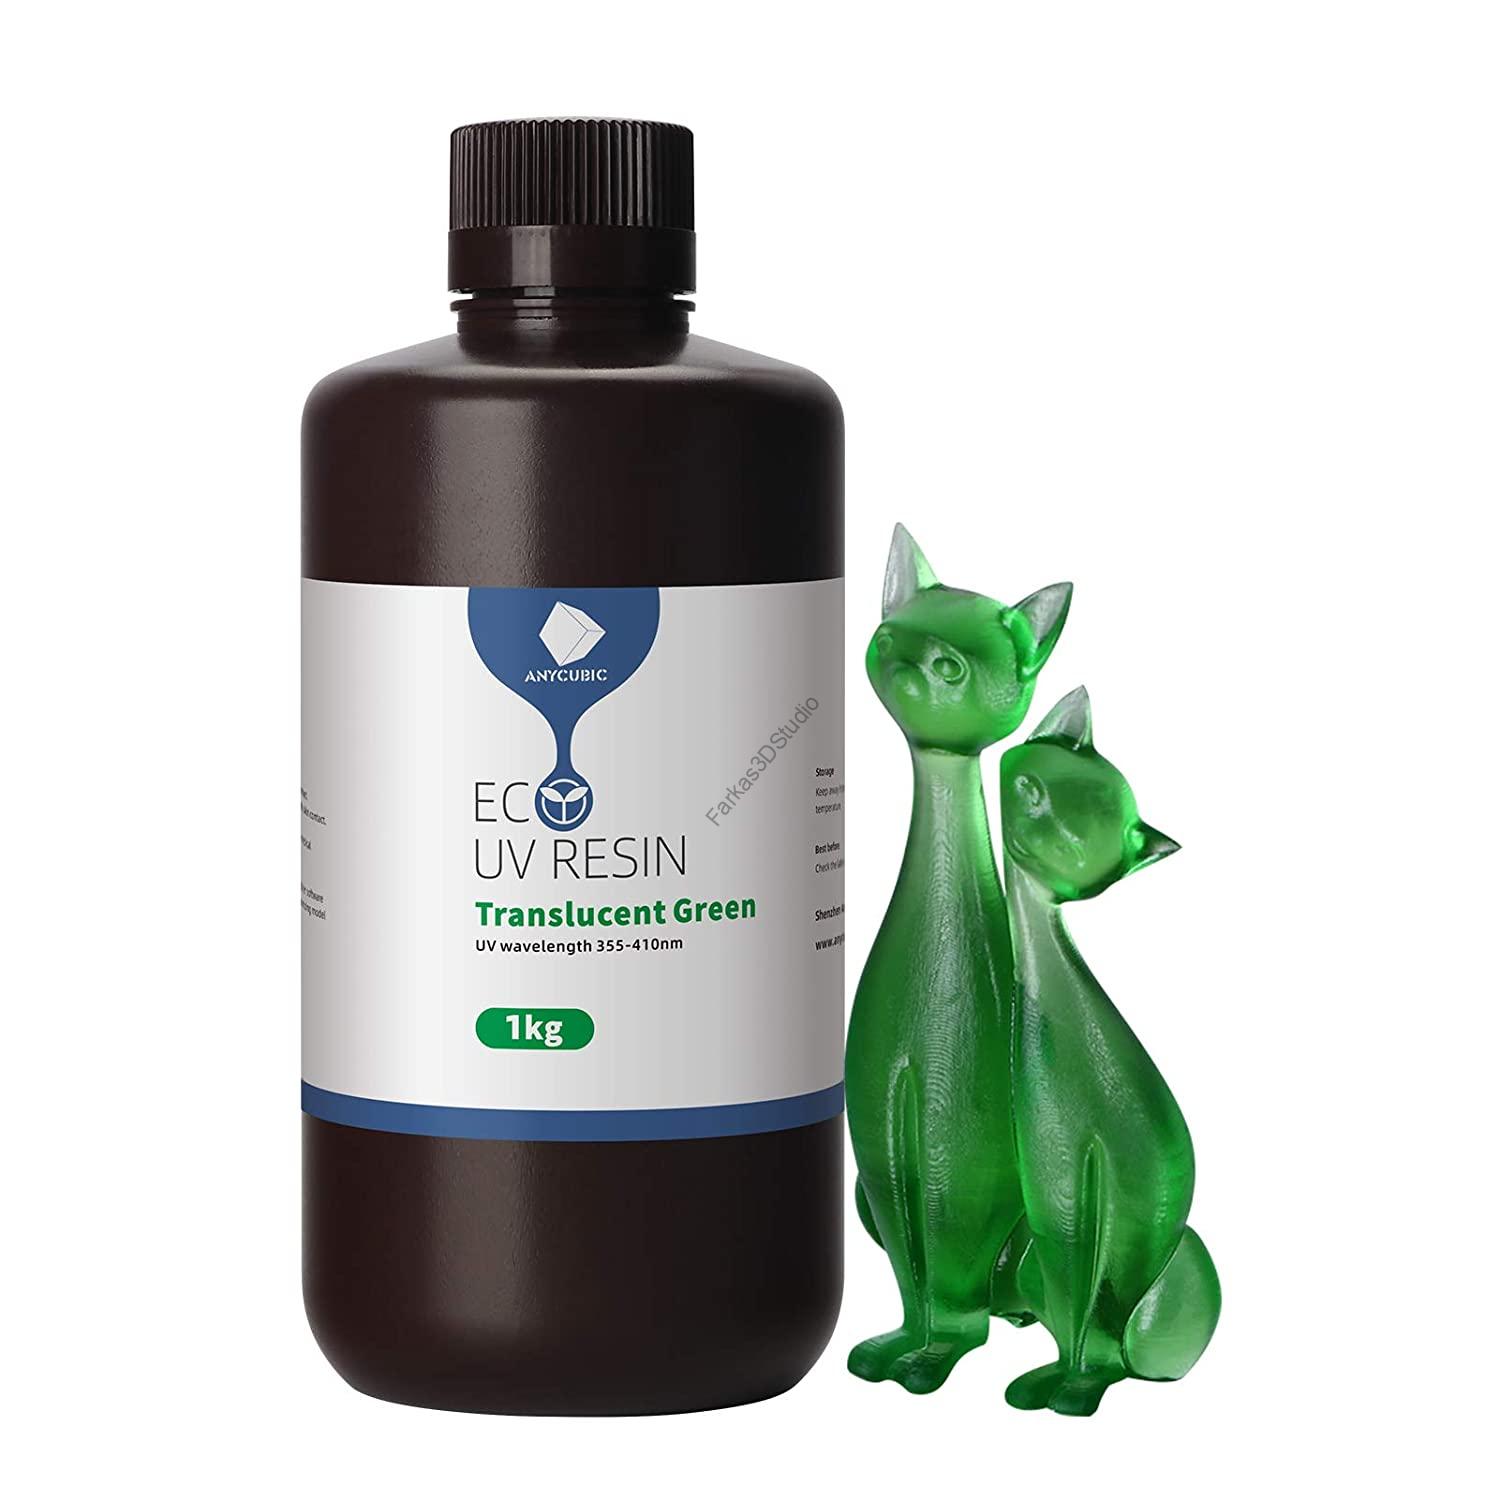 Áttetsző zöld Anycubic Plant-based UV 405nm Resin, fotopolimer műgyanta 1KG